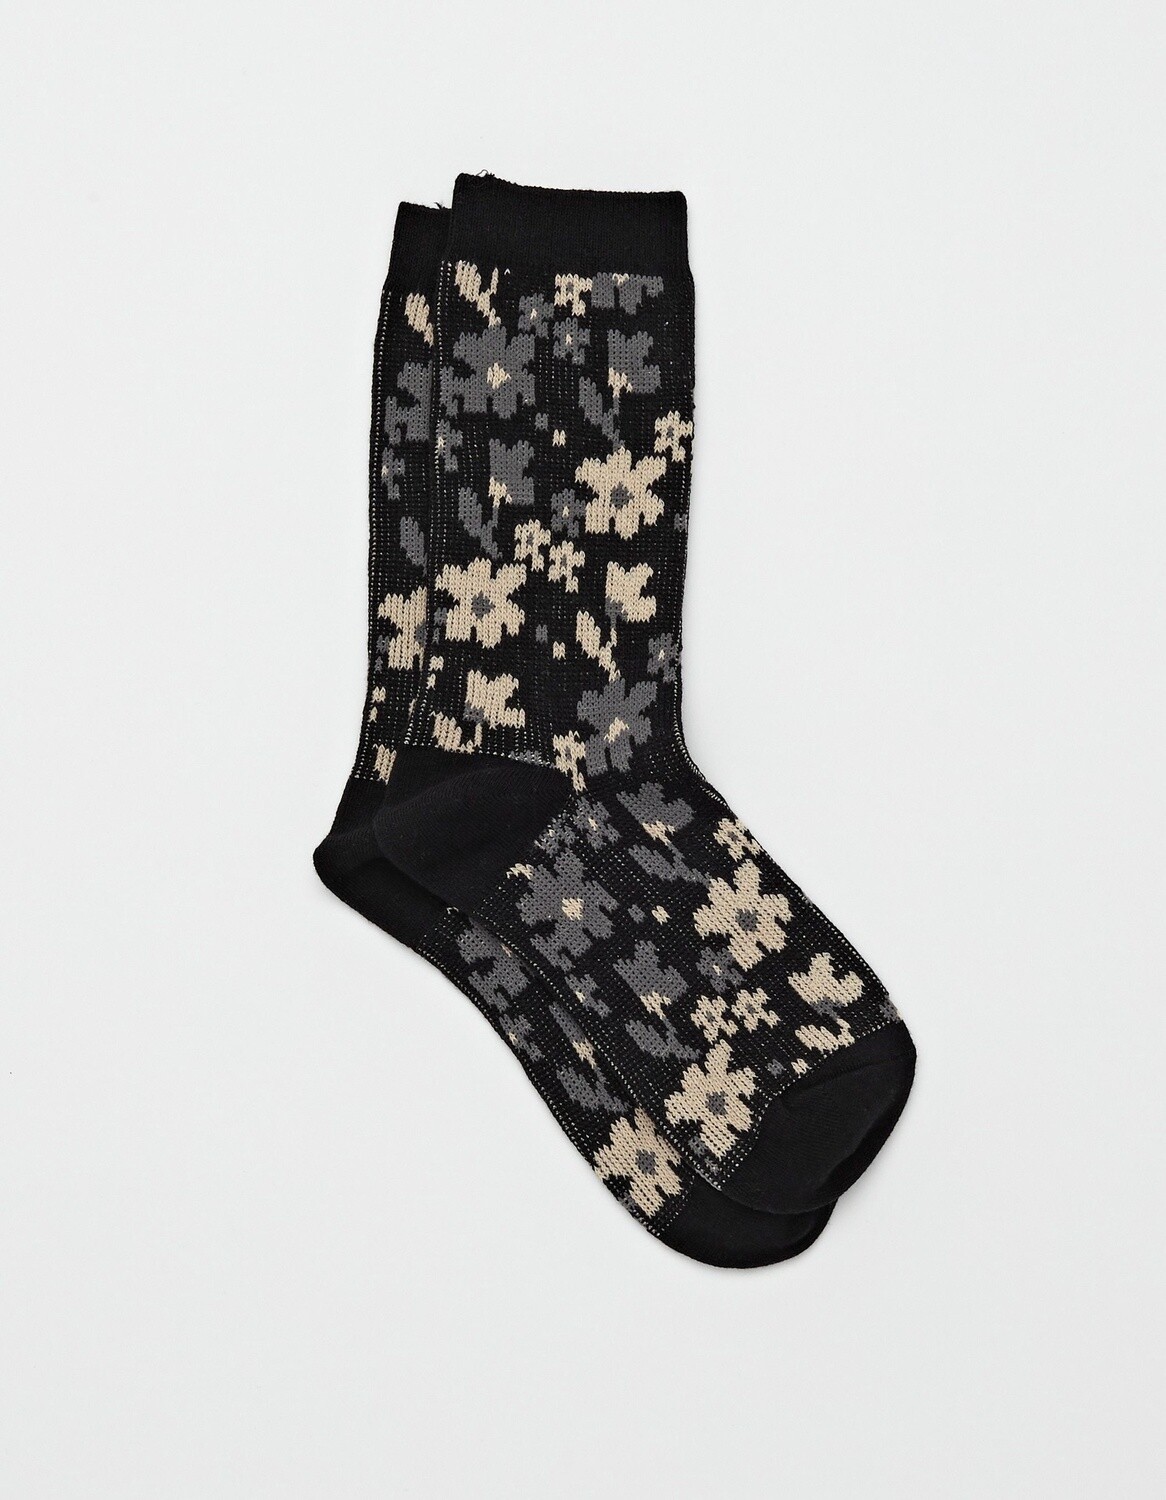 Stella + Gemma Socks, Black Floral